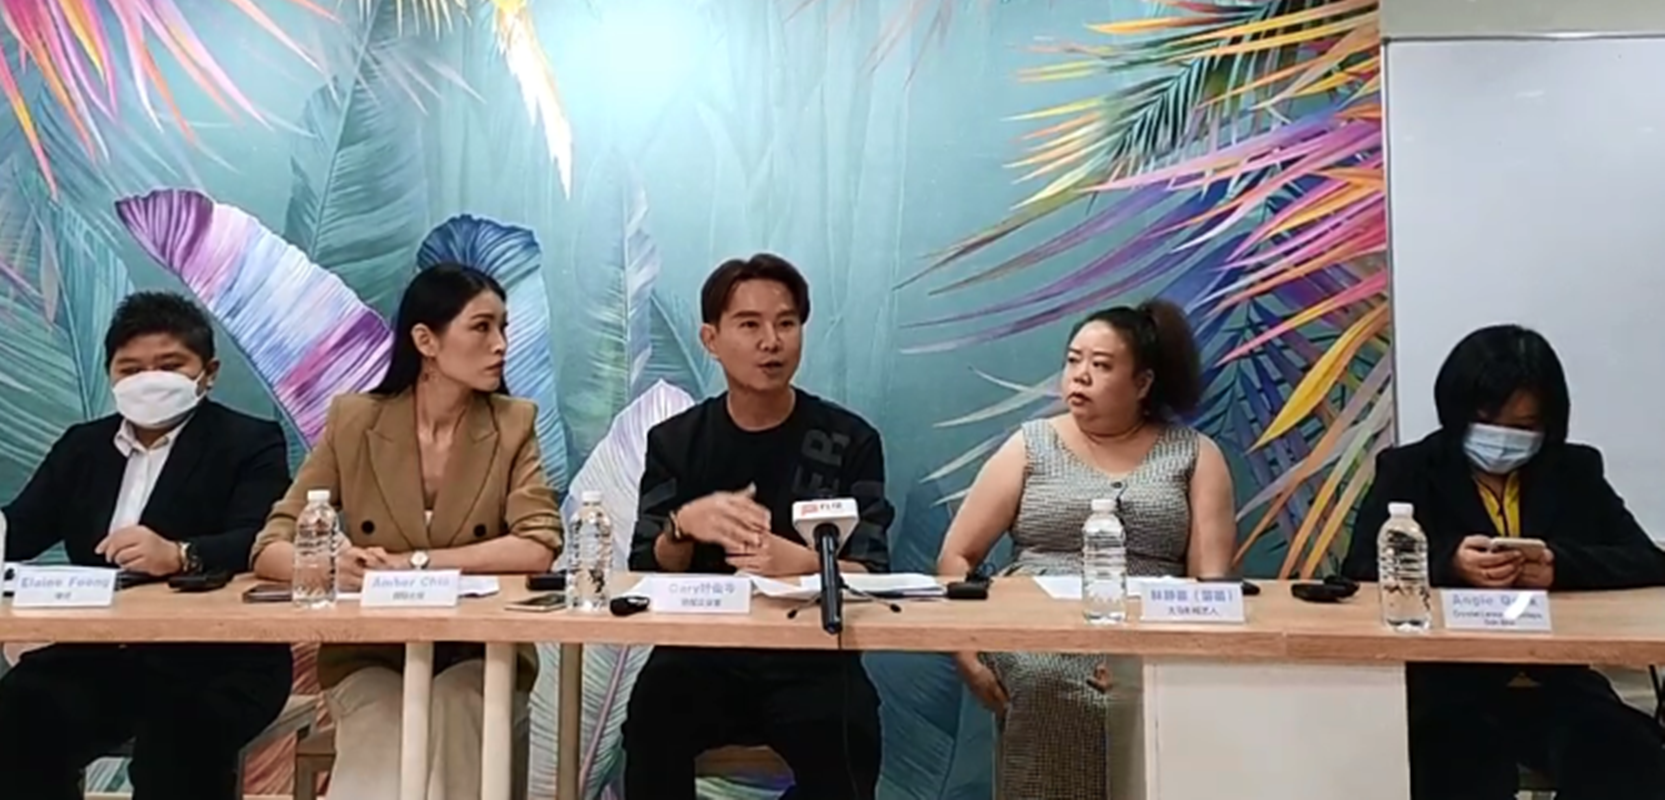 葉俊岑指出，他與謝麗萍及林靜苗已經以實際行動幫忙粉絲處理問題，因此希望大家可以停止對他們和他們家人的攻擊。